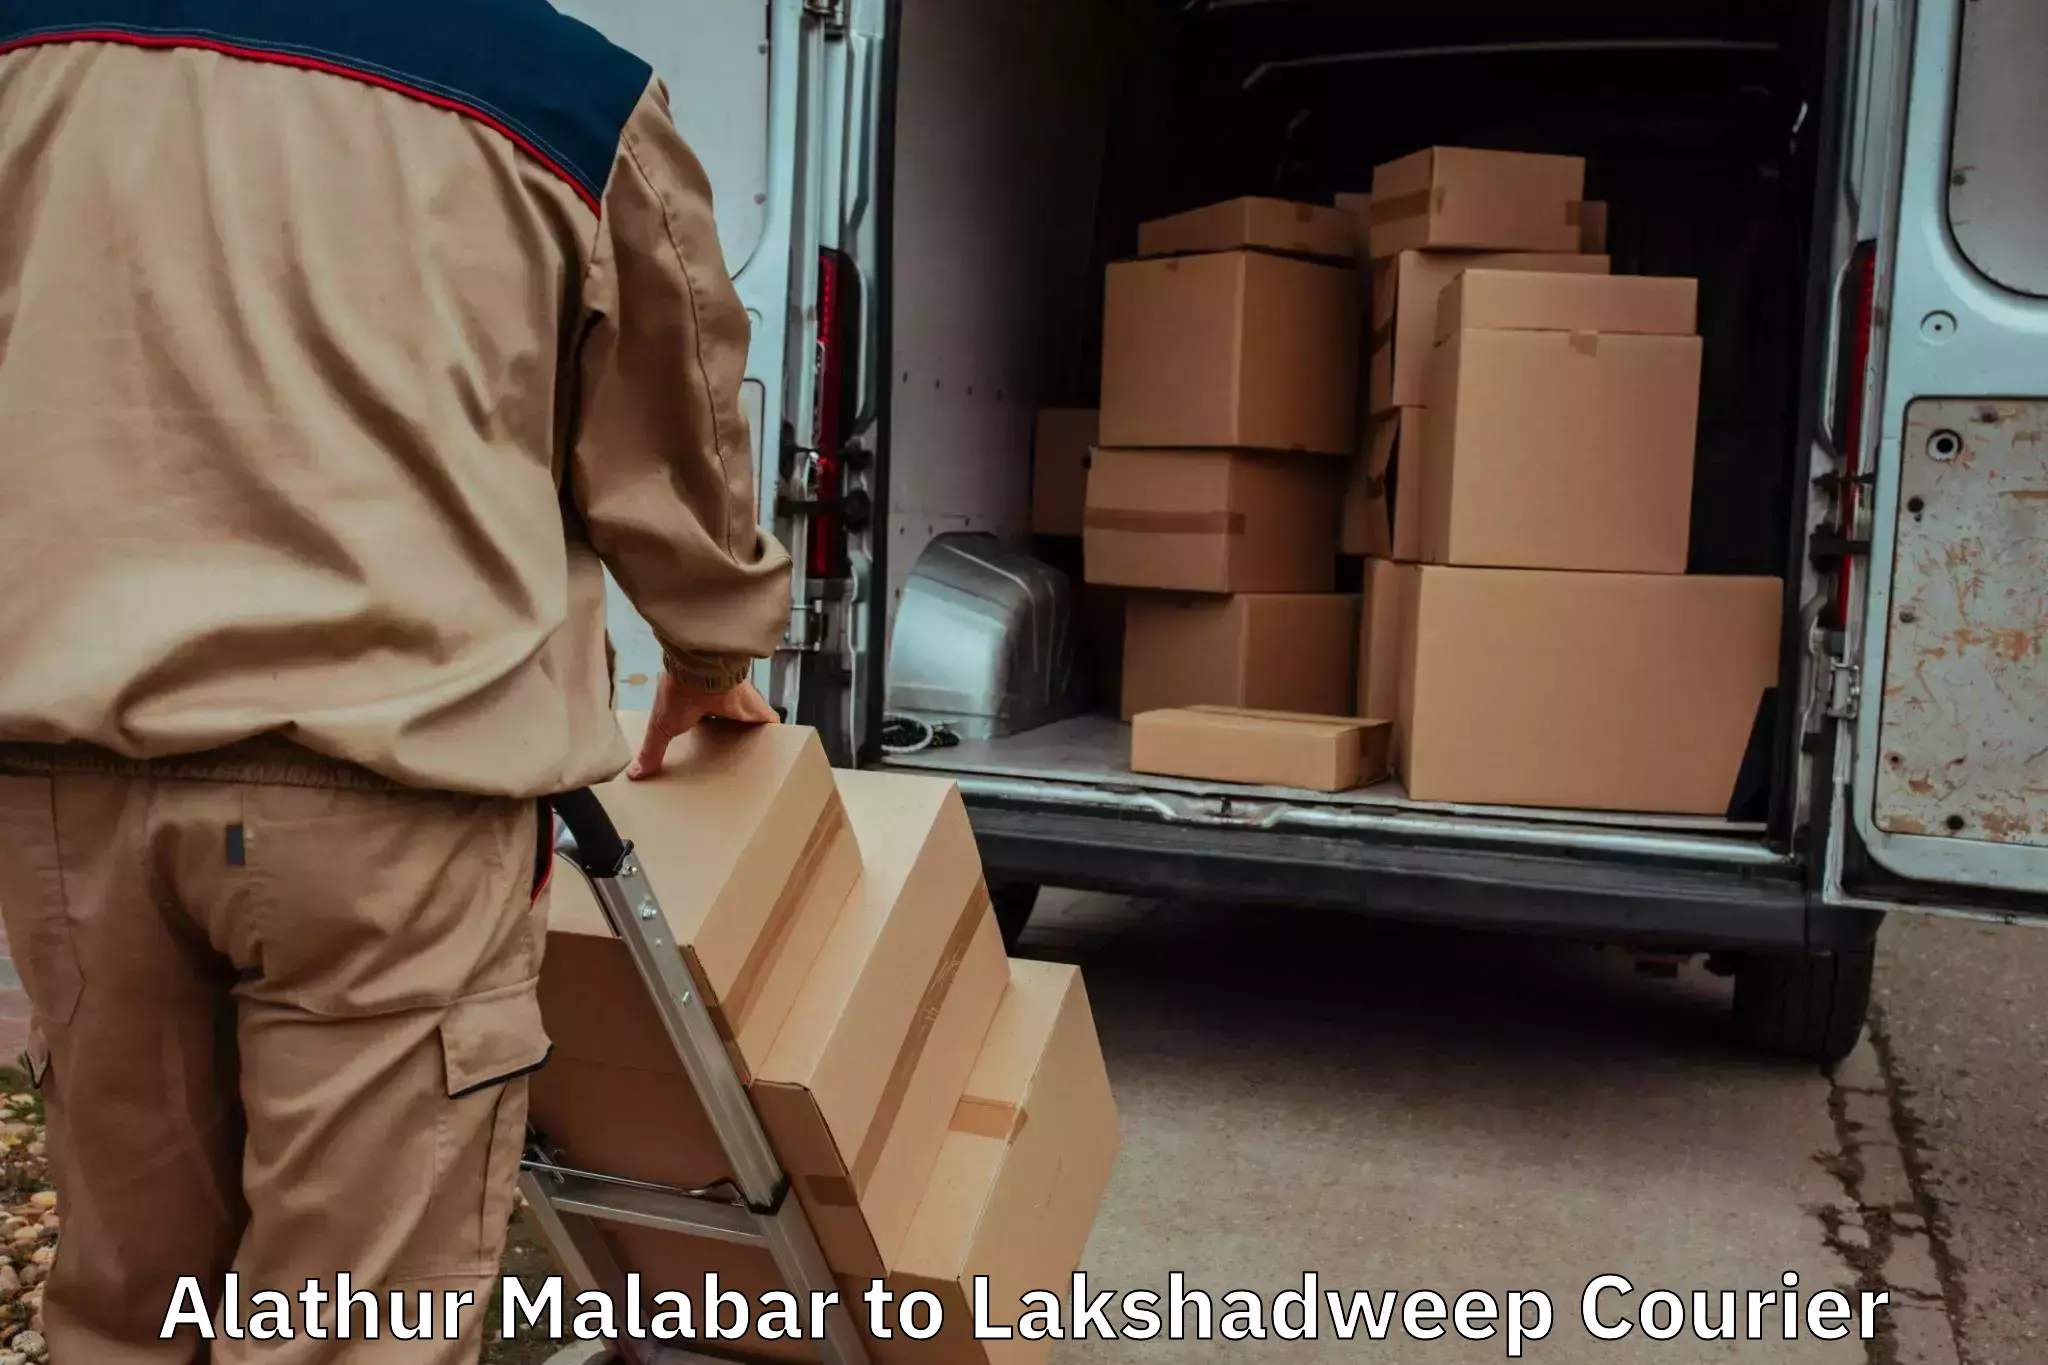 Residential furniture transport Alathur Malabar to Lakshadweep